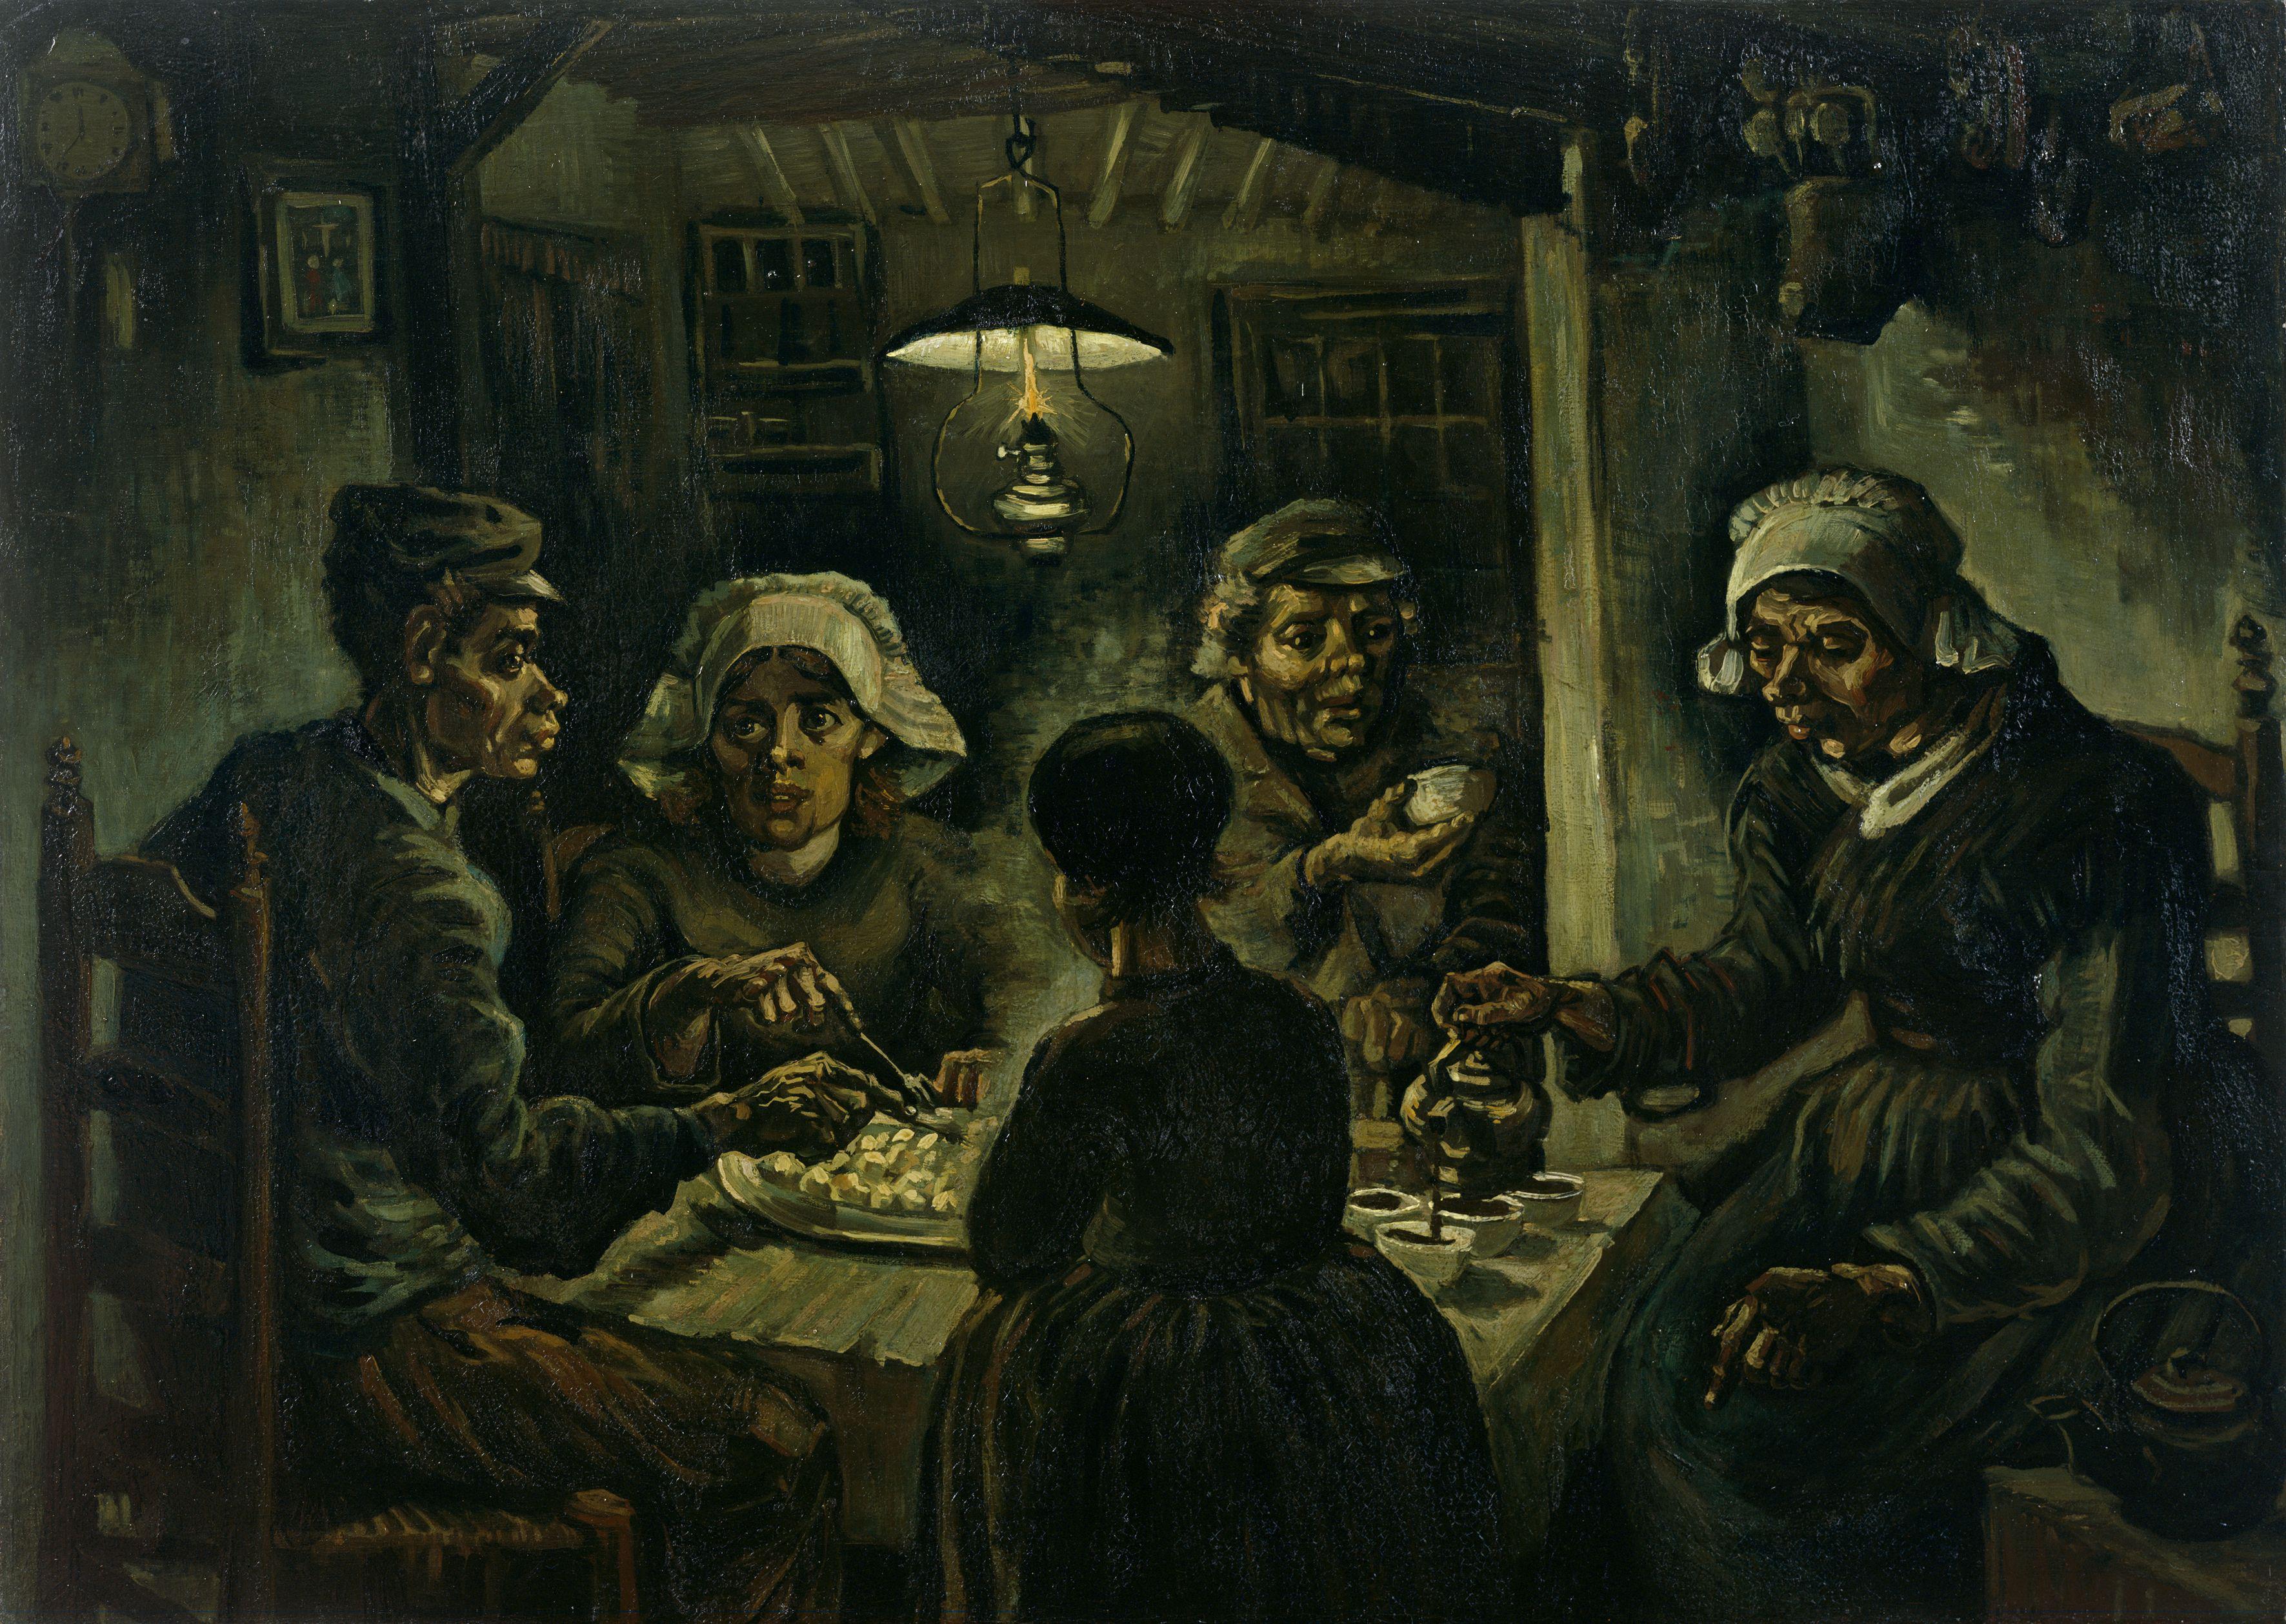 Едоки картофеля by Винсе́нт Виллем Ван Гог - 1885 - 82 × 114 см 